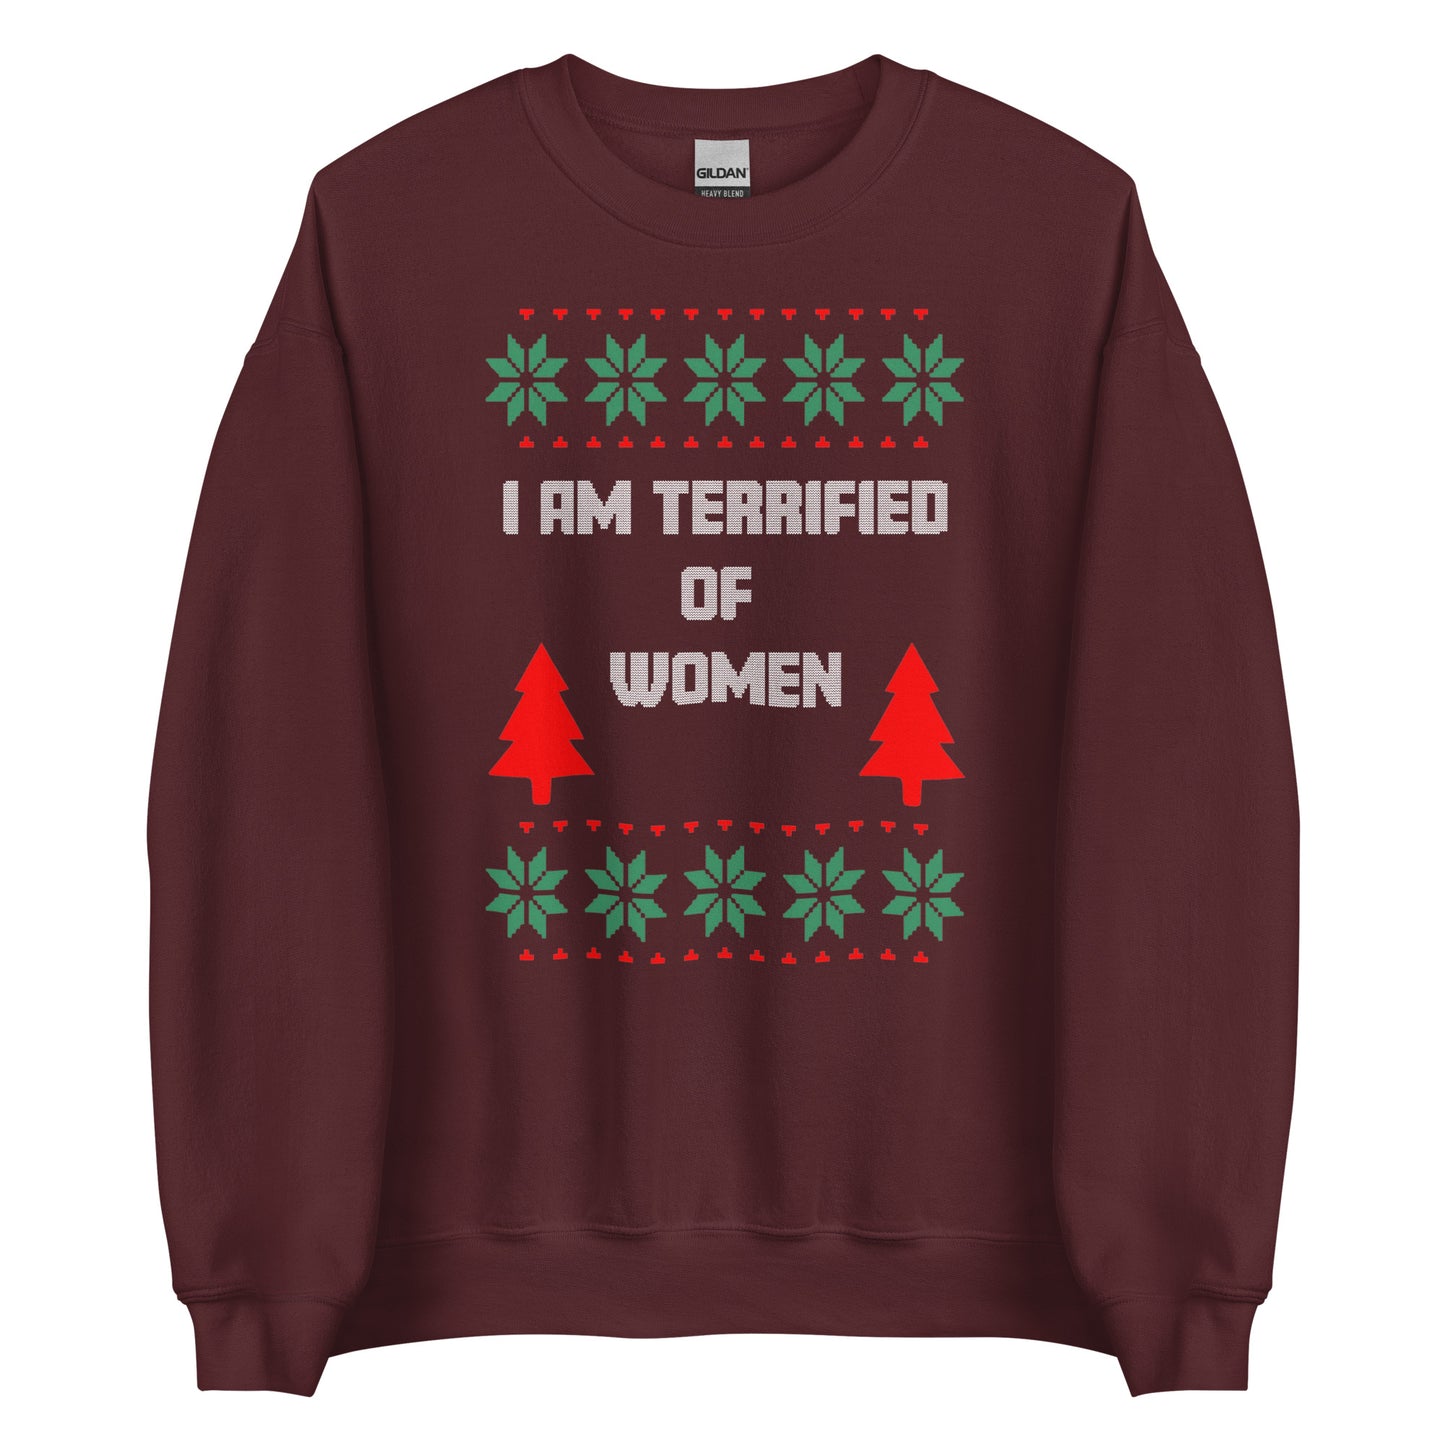 I AM TERRIFIED OF WOMEN